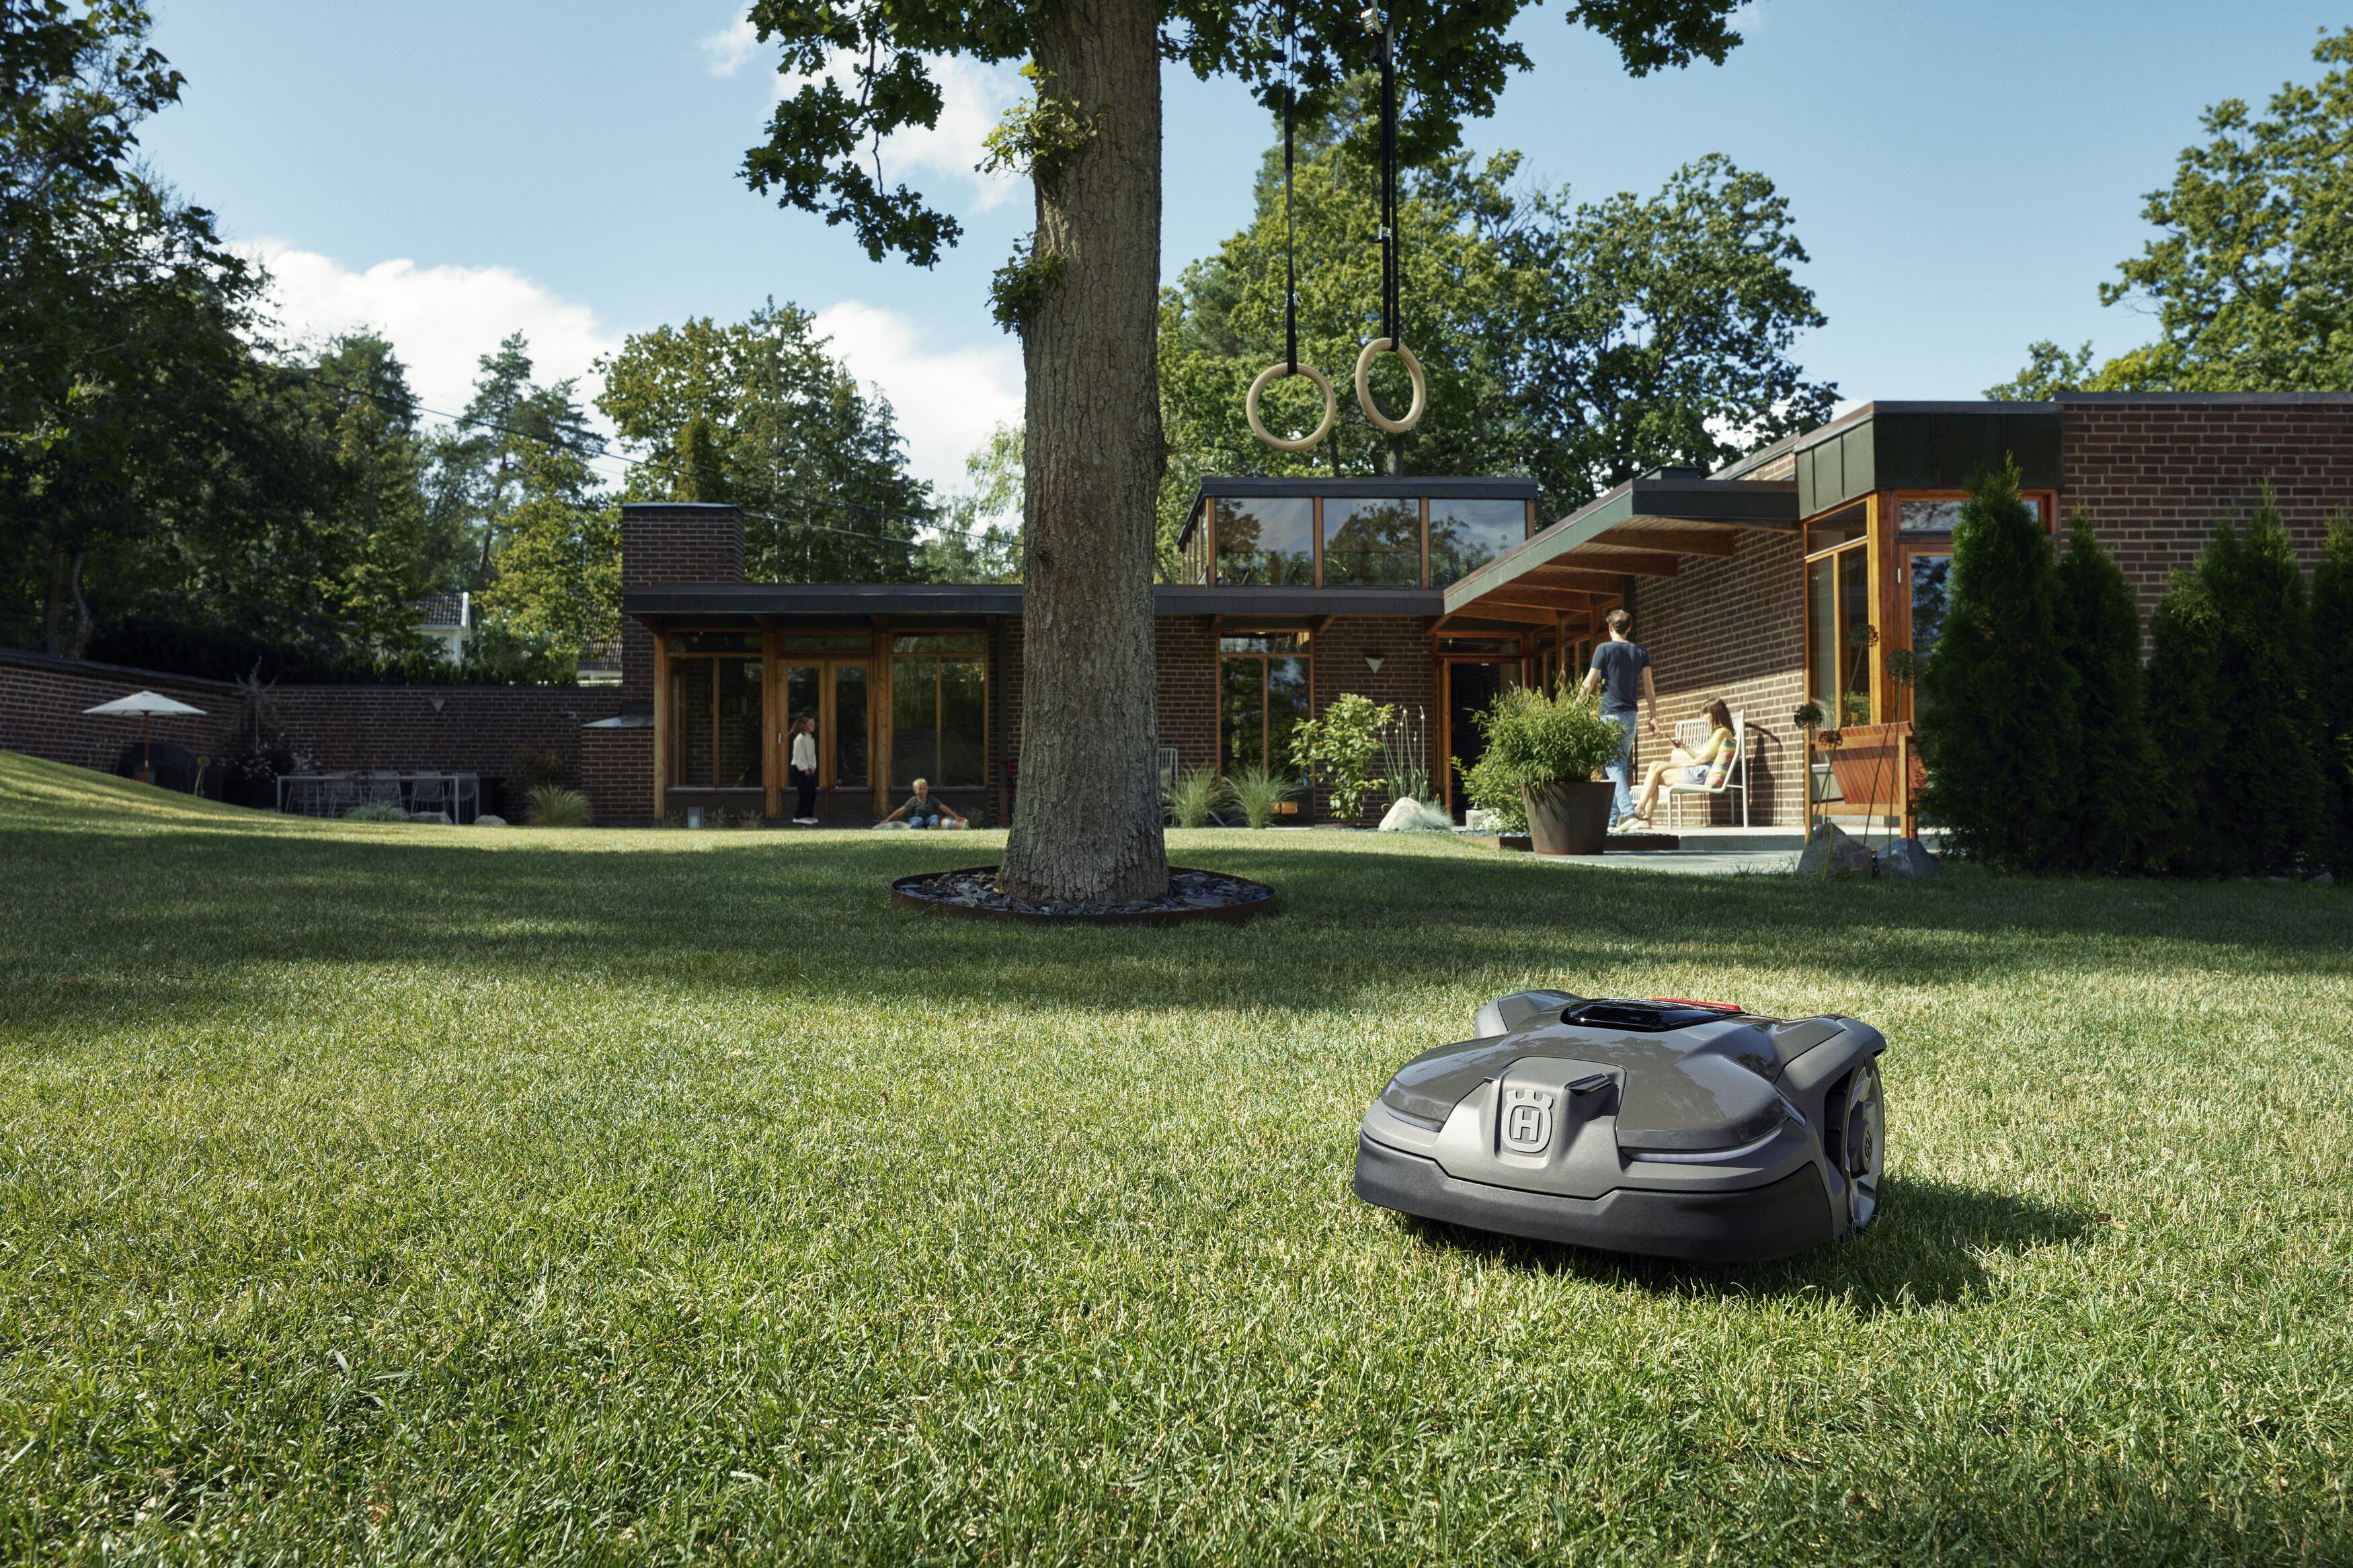 robot lawn mower 2023: autonomous bots that trim grass while you relax | T3